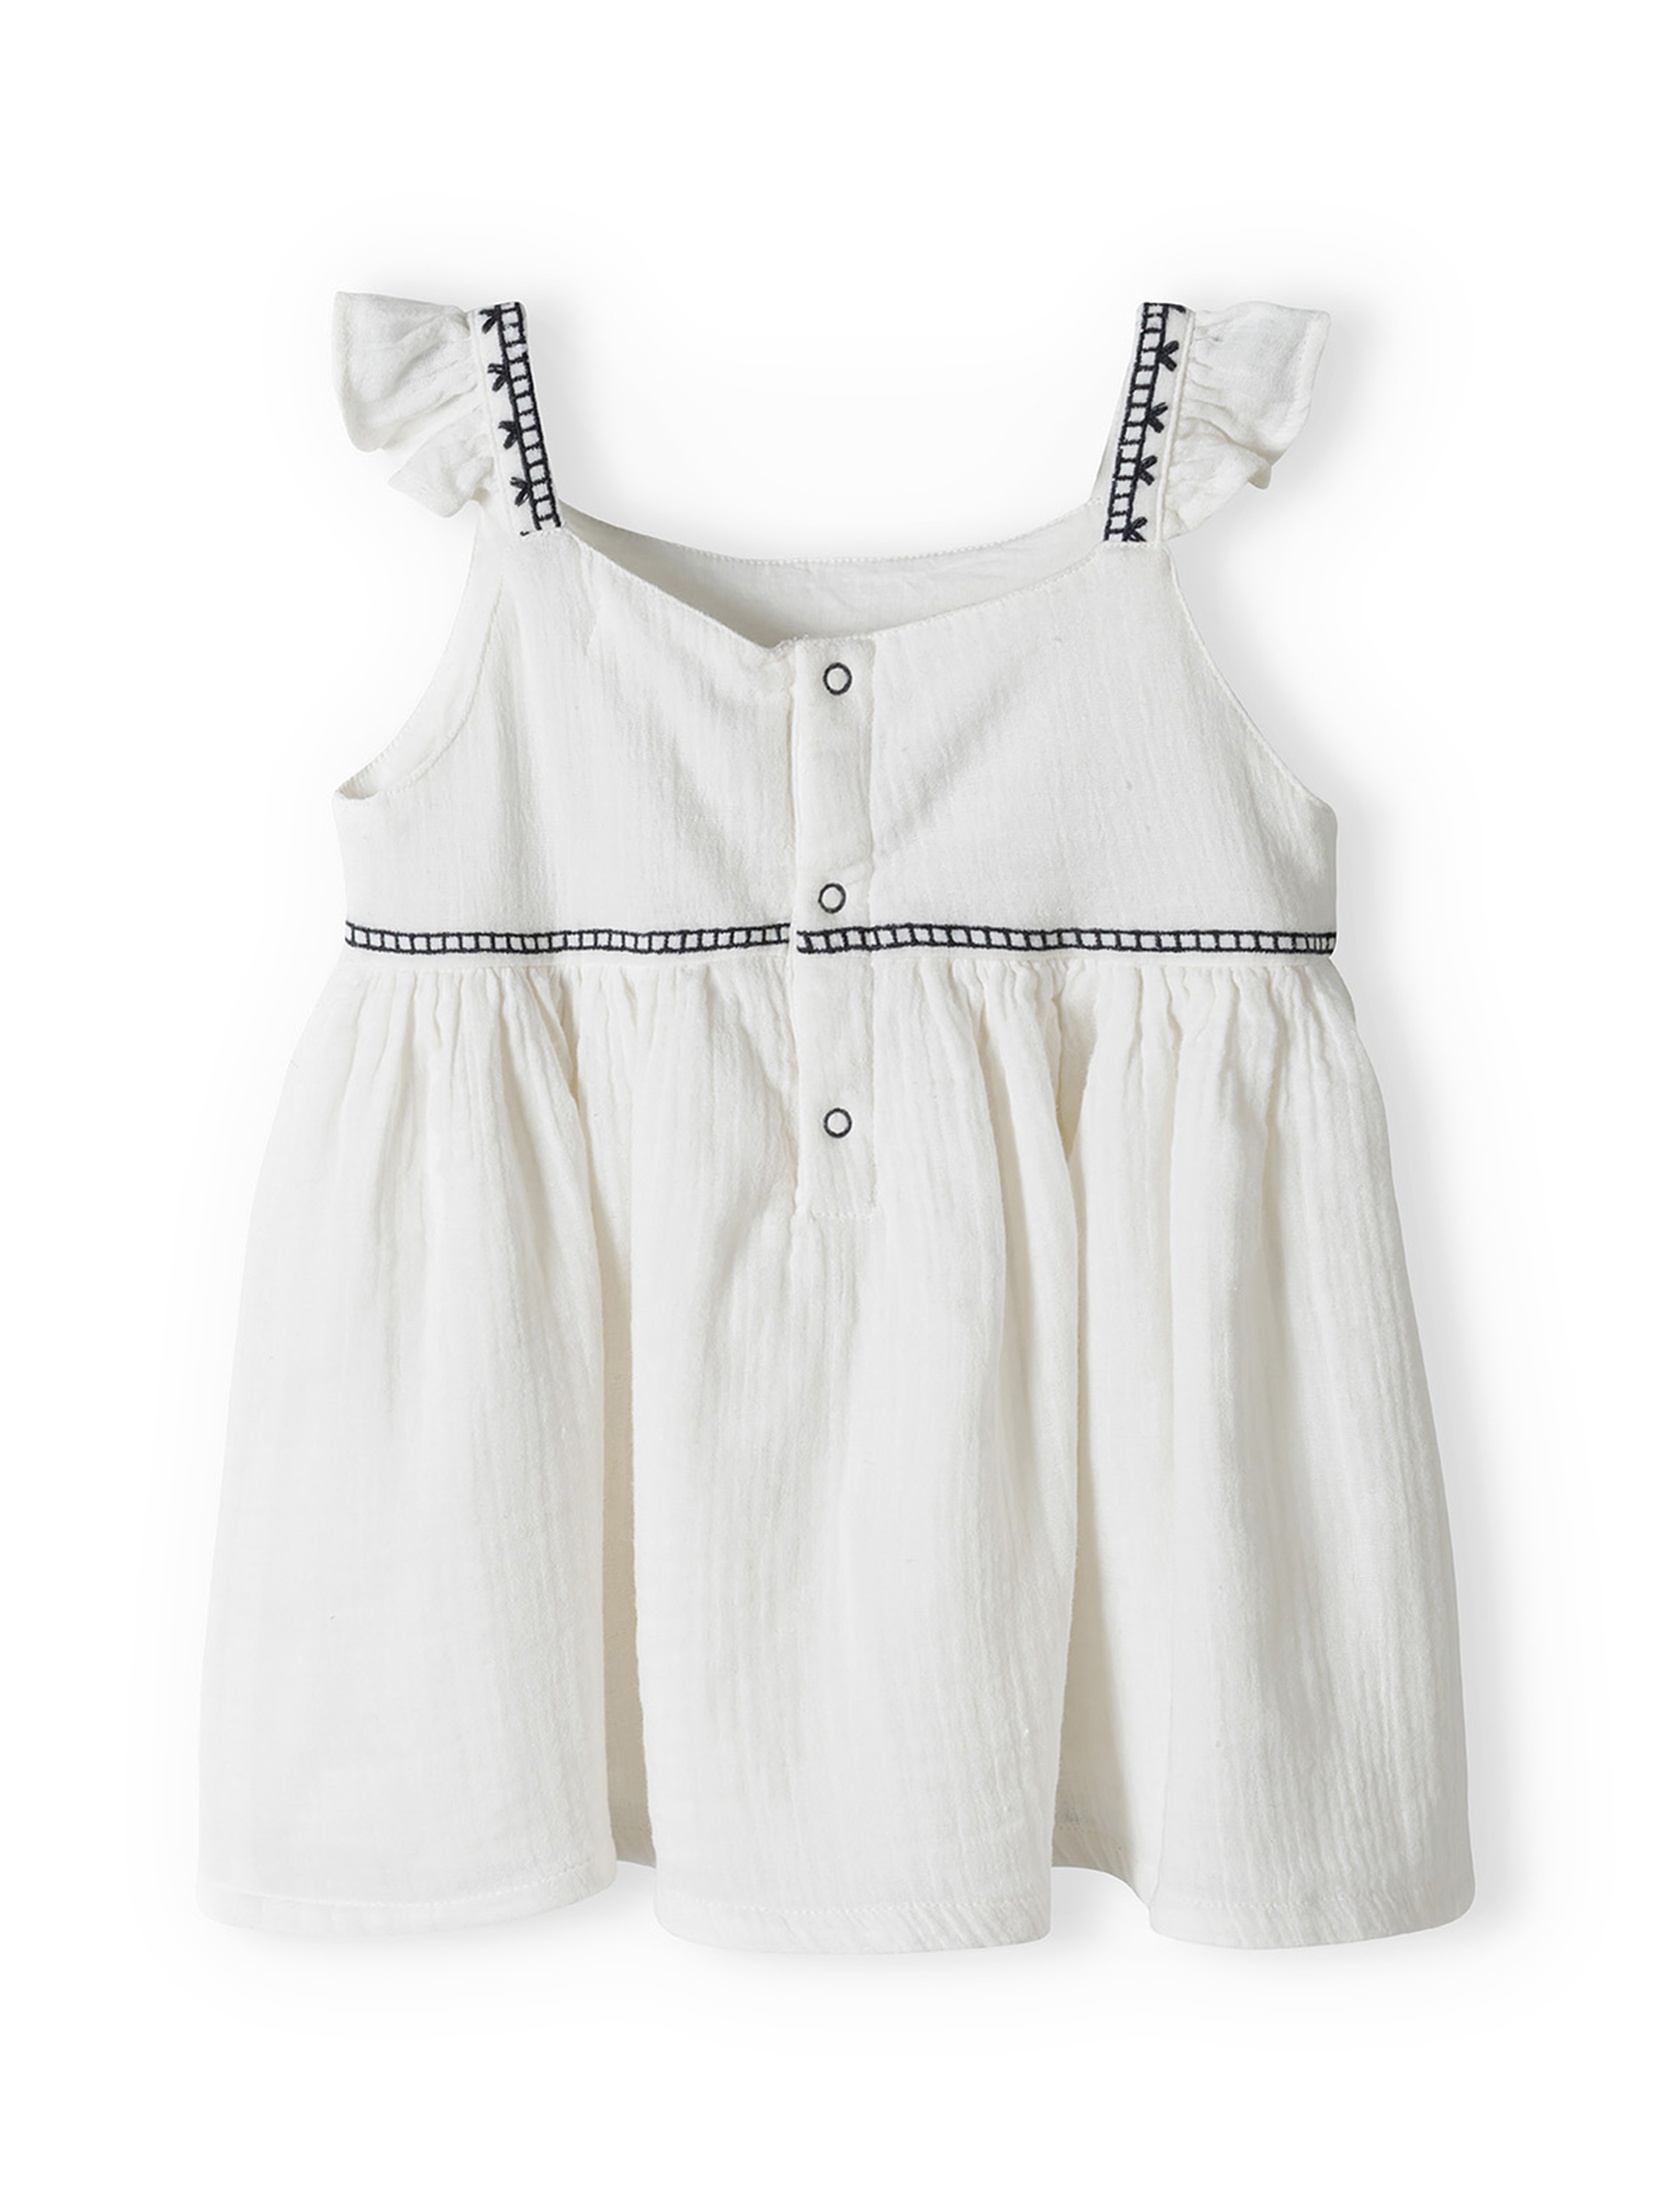 Komplet dla niemowlaka- biały haftowany top + luźne spodenki w kratkę